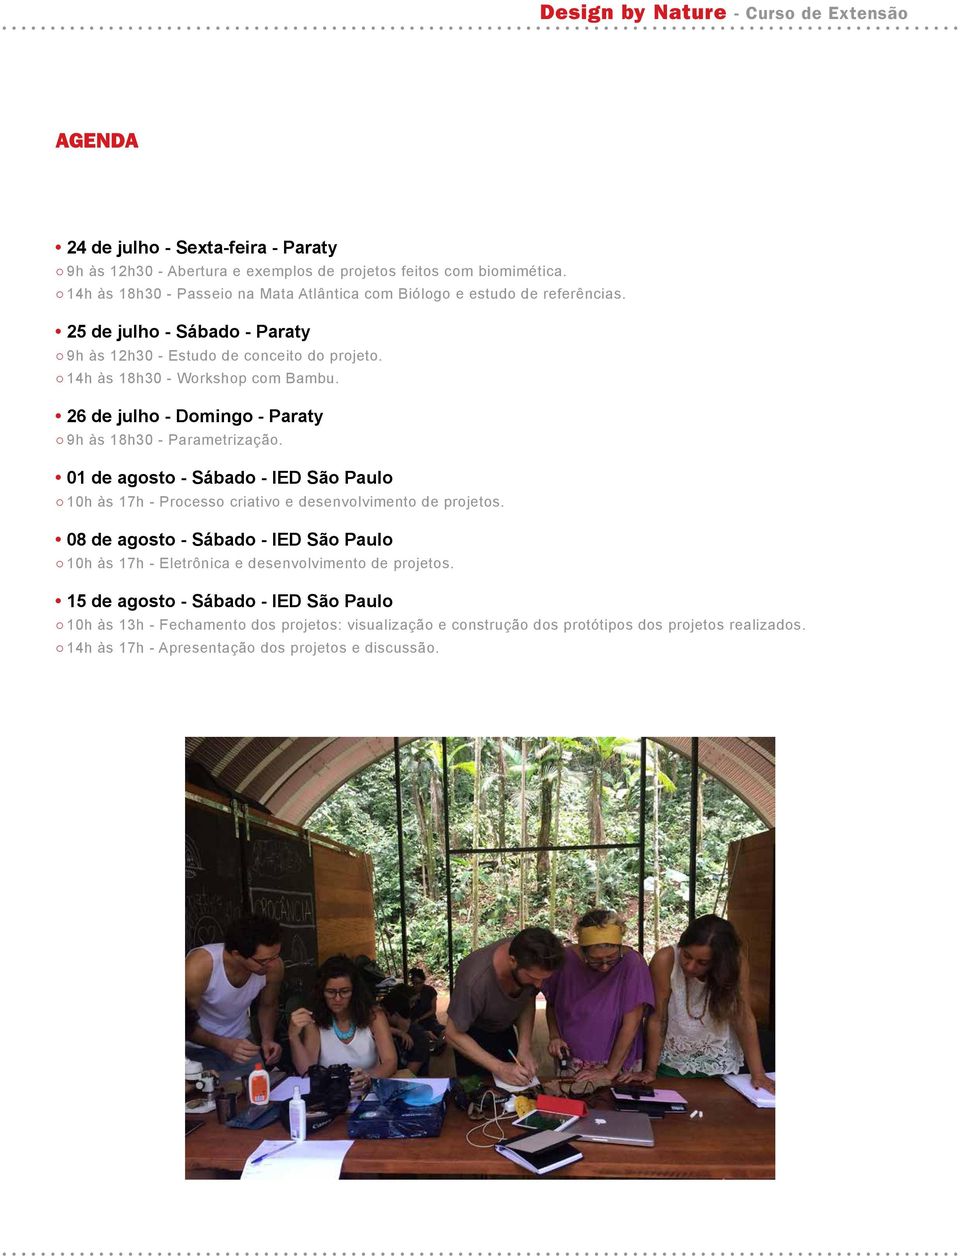 26 de julho - Domingo - Paraty 9h às 18h30 - Parametrização. 01 de agosto - Sábado - IED São Paulo 10h às 17h - Processo criativo e desenvolvimento de projetos.